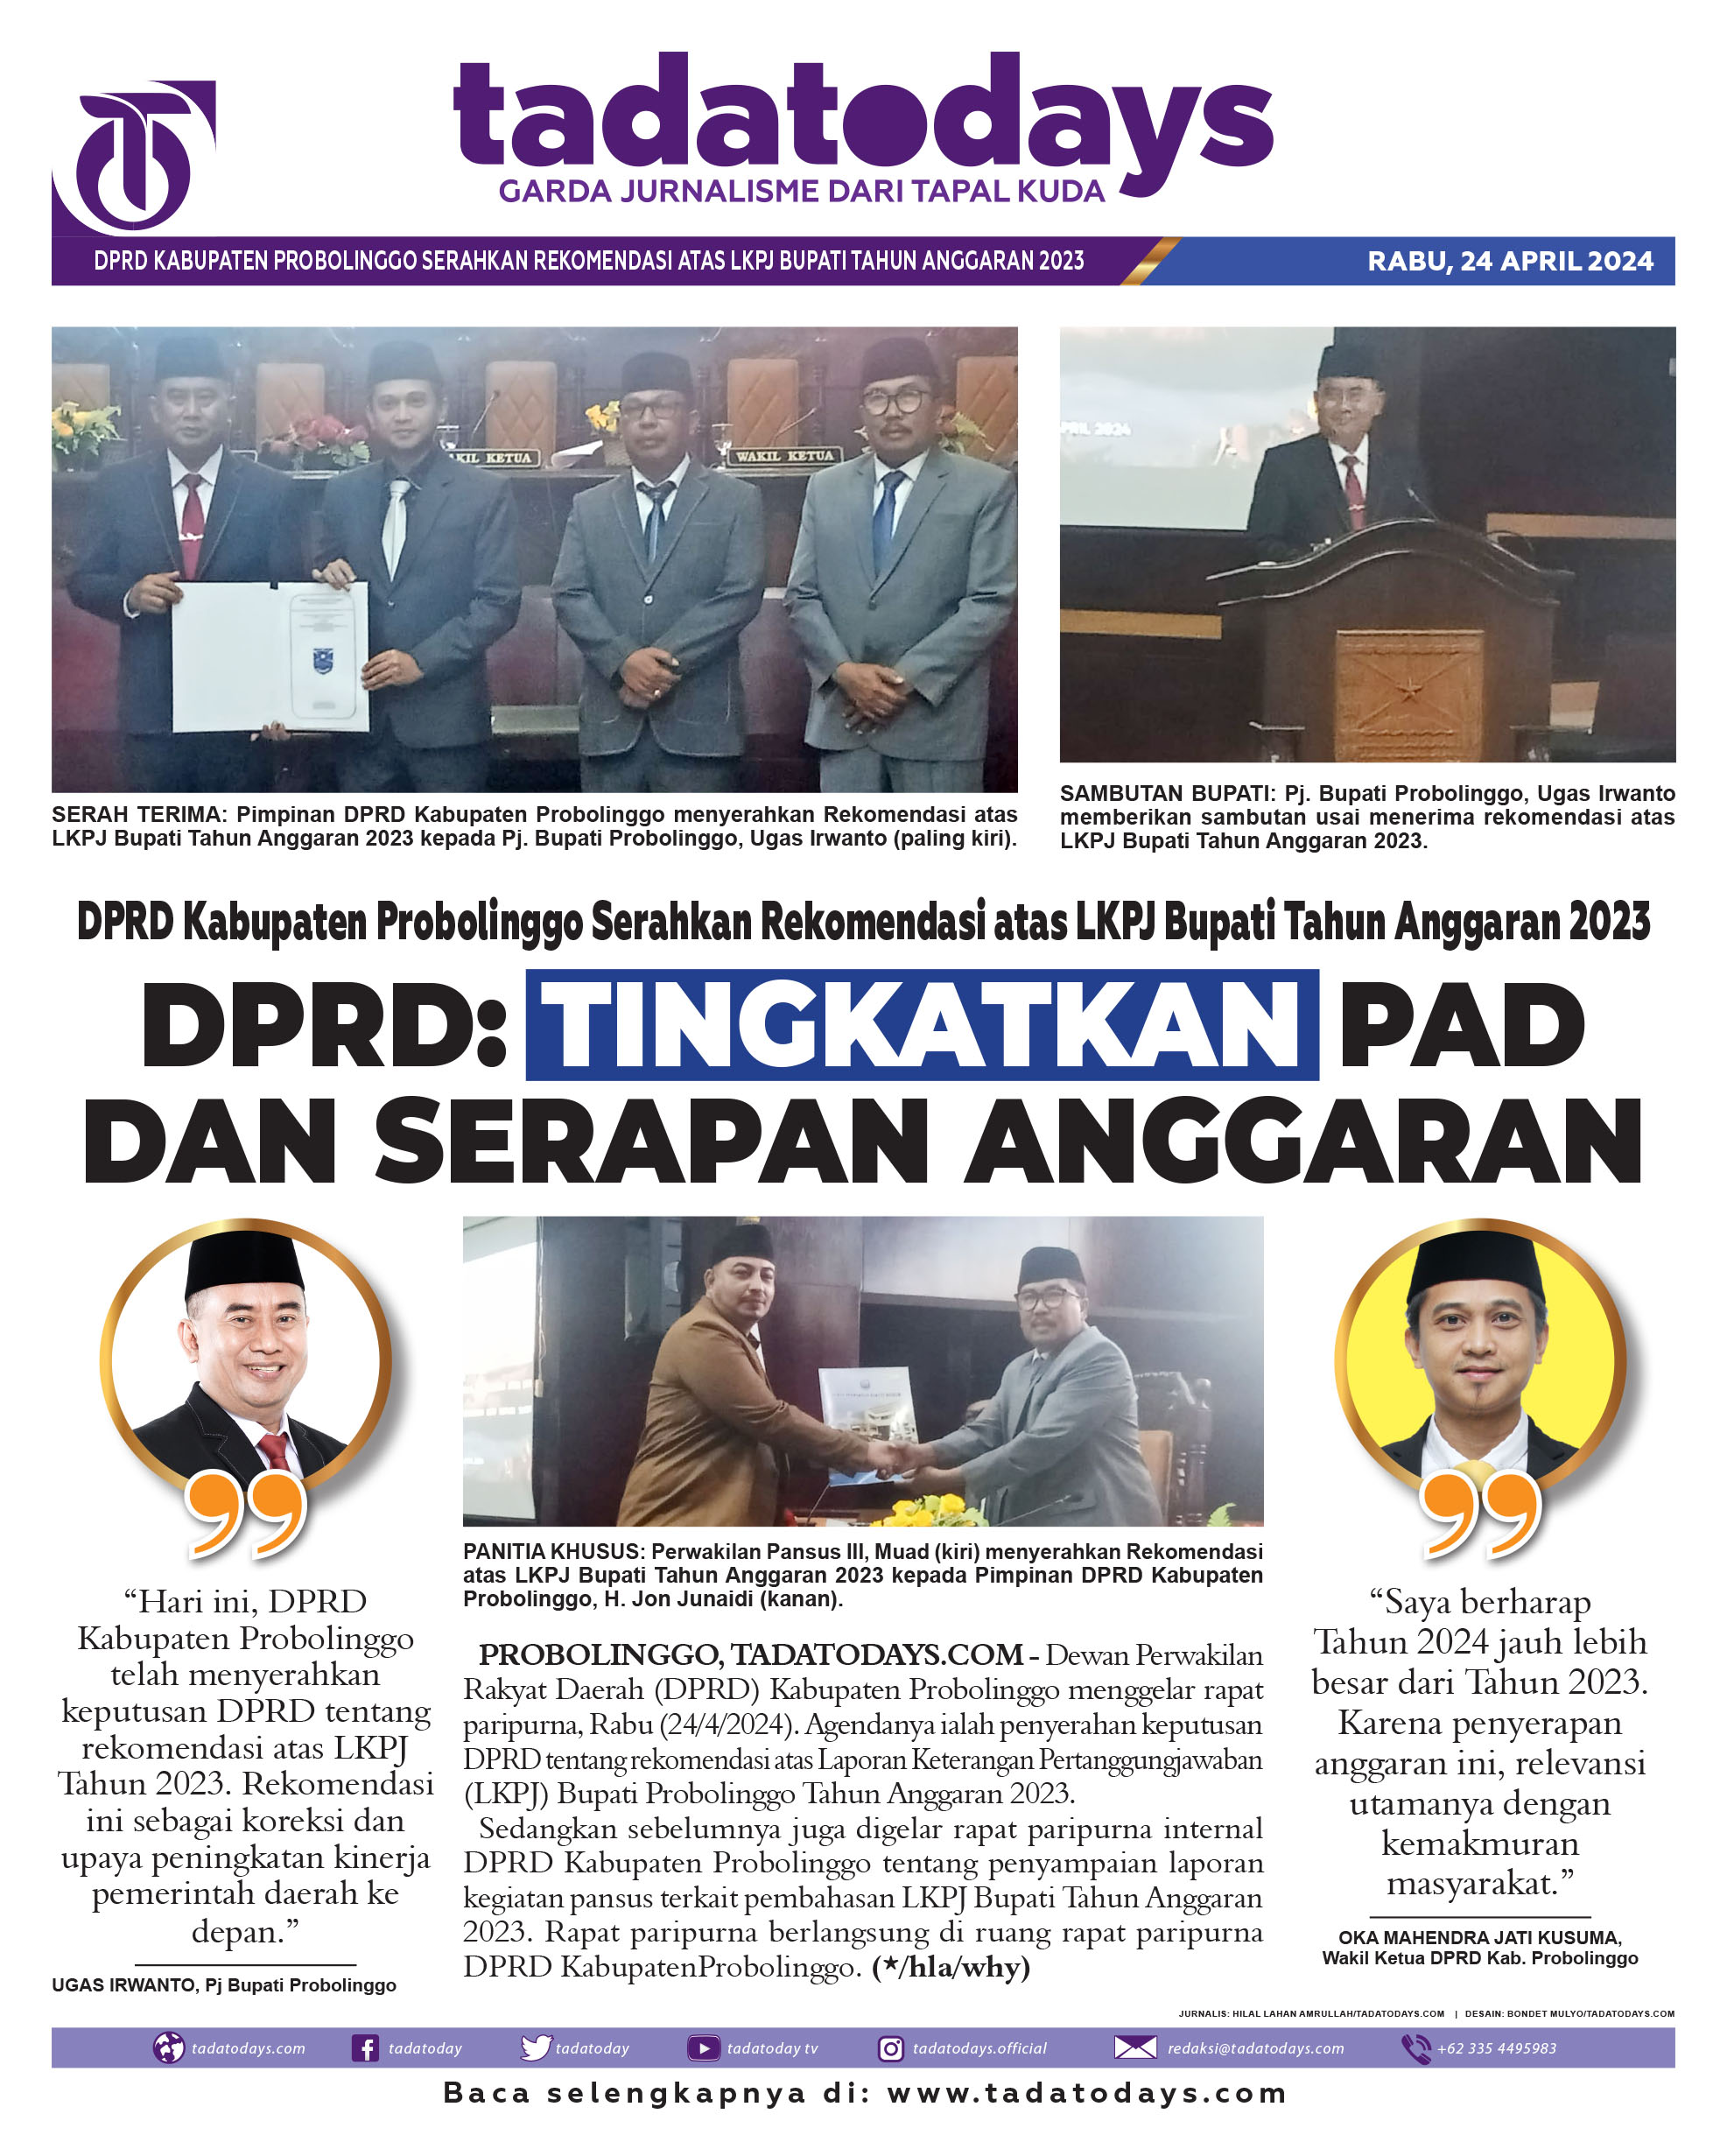 DPRD Kabupaten Probolinggo Menyerahkan Rekomendasi atas LKPJ Bupati Tahun Anggaran 2023